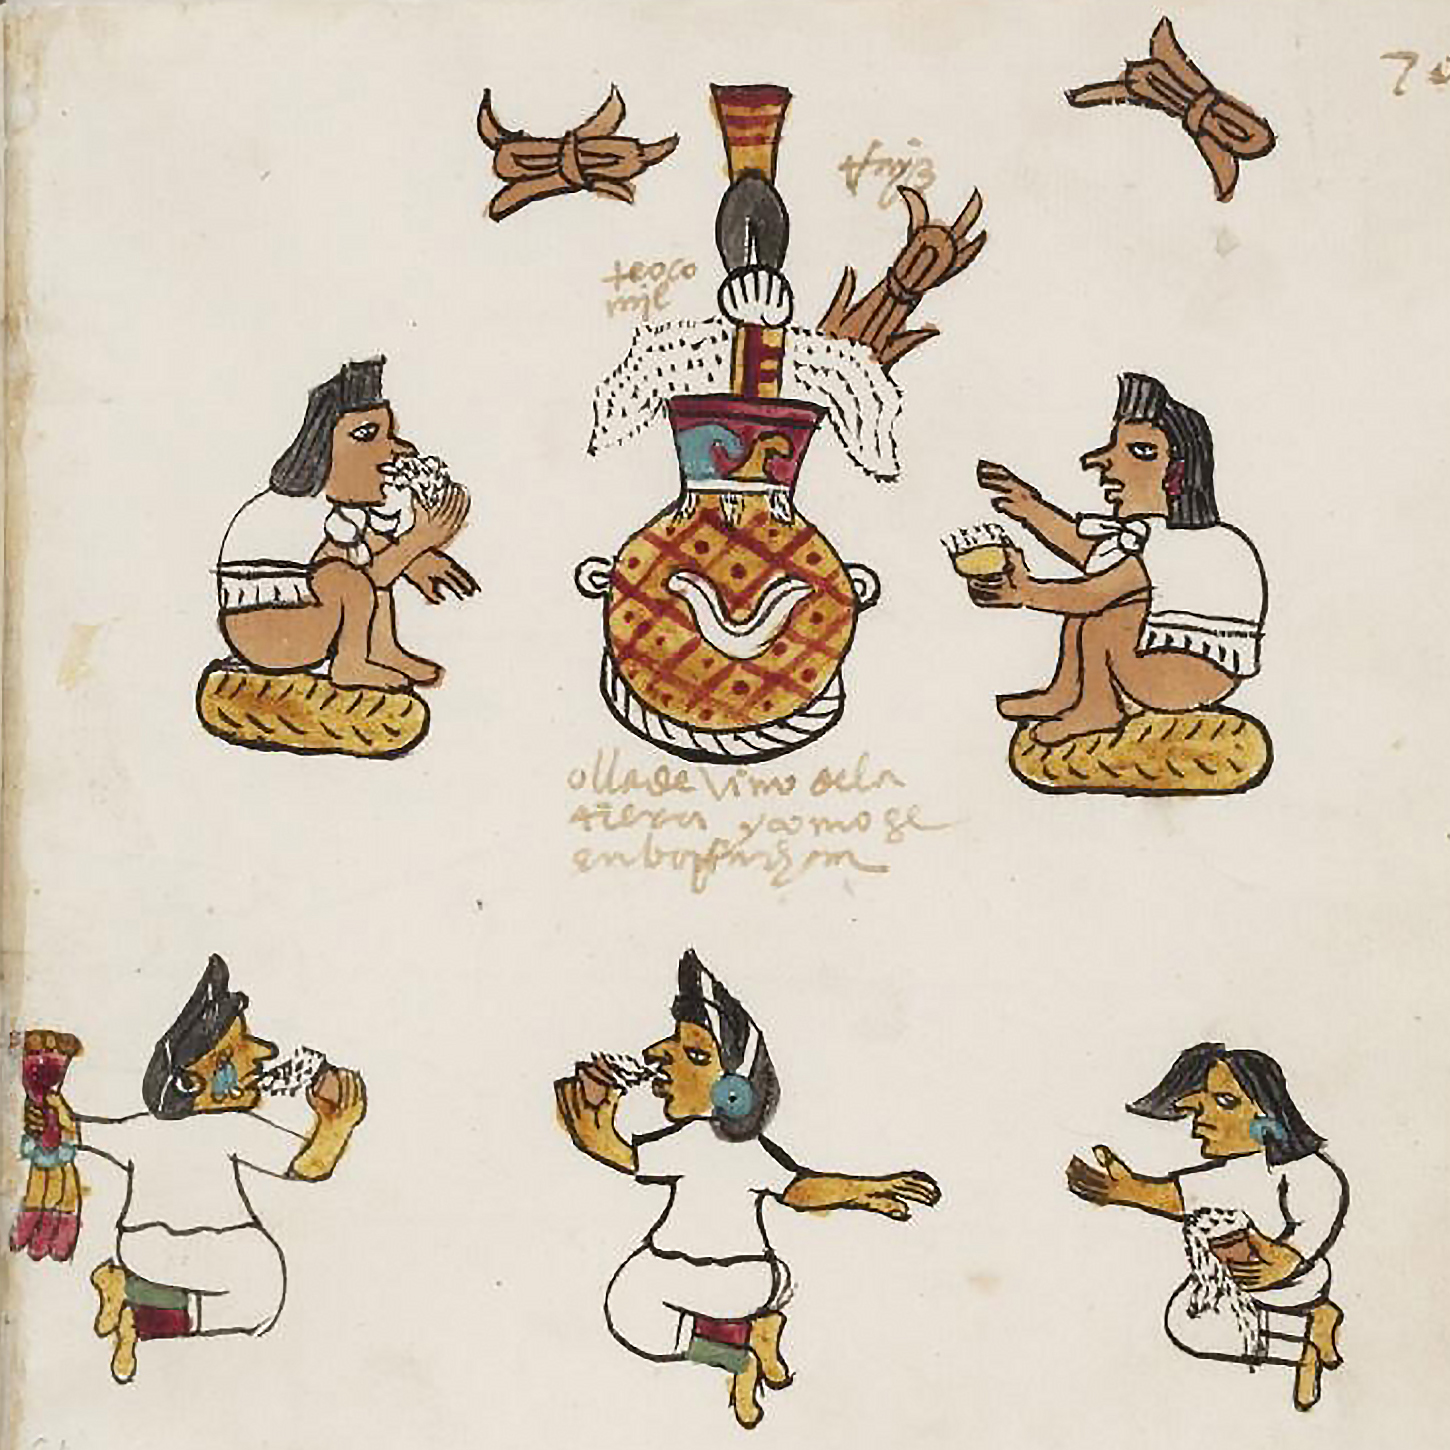 Индейцы пьют пульке. Фрагмент Кодекса Тудела. Коллекция Museo de América, Madrid.